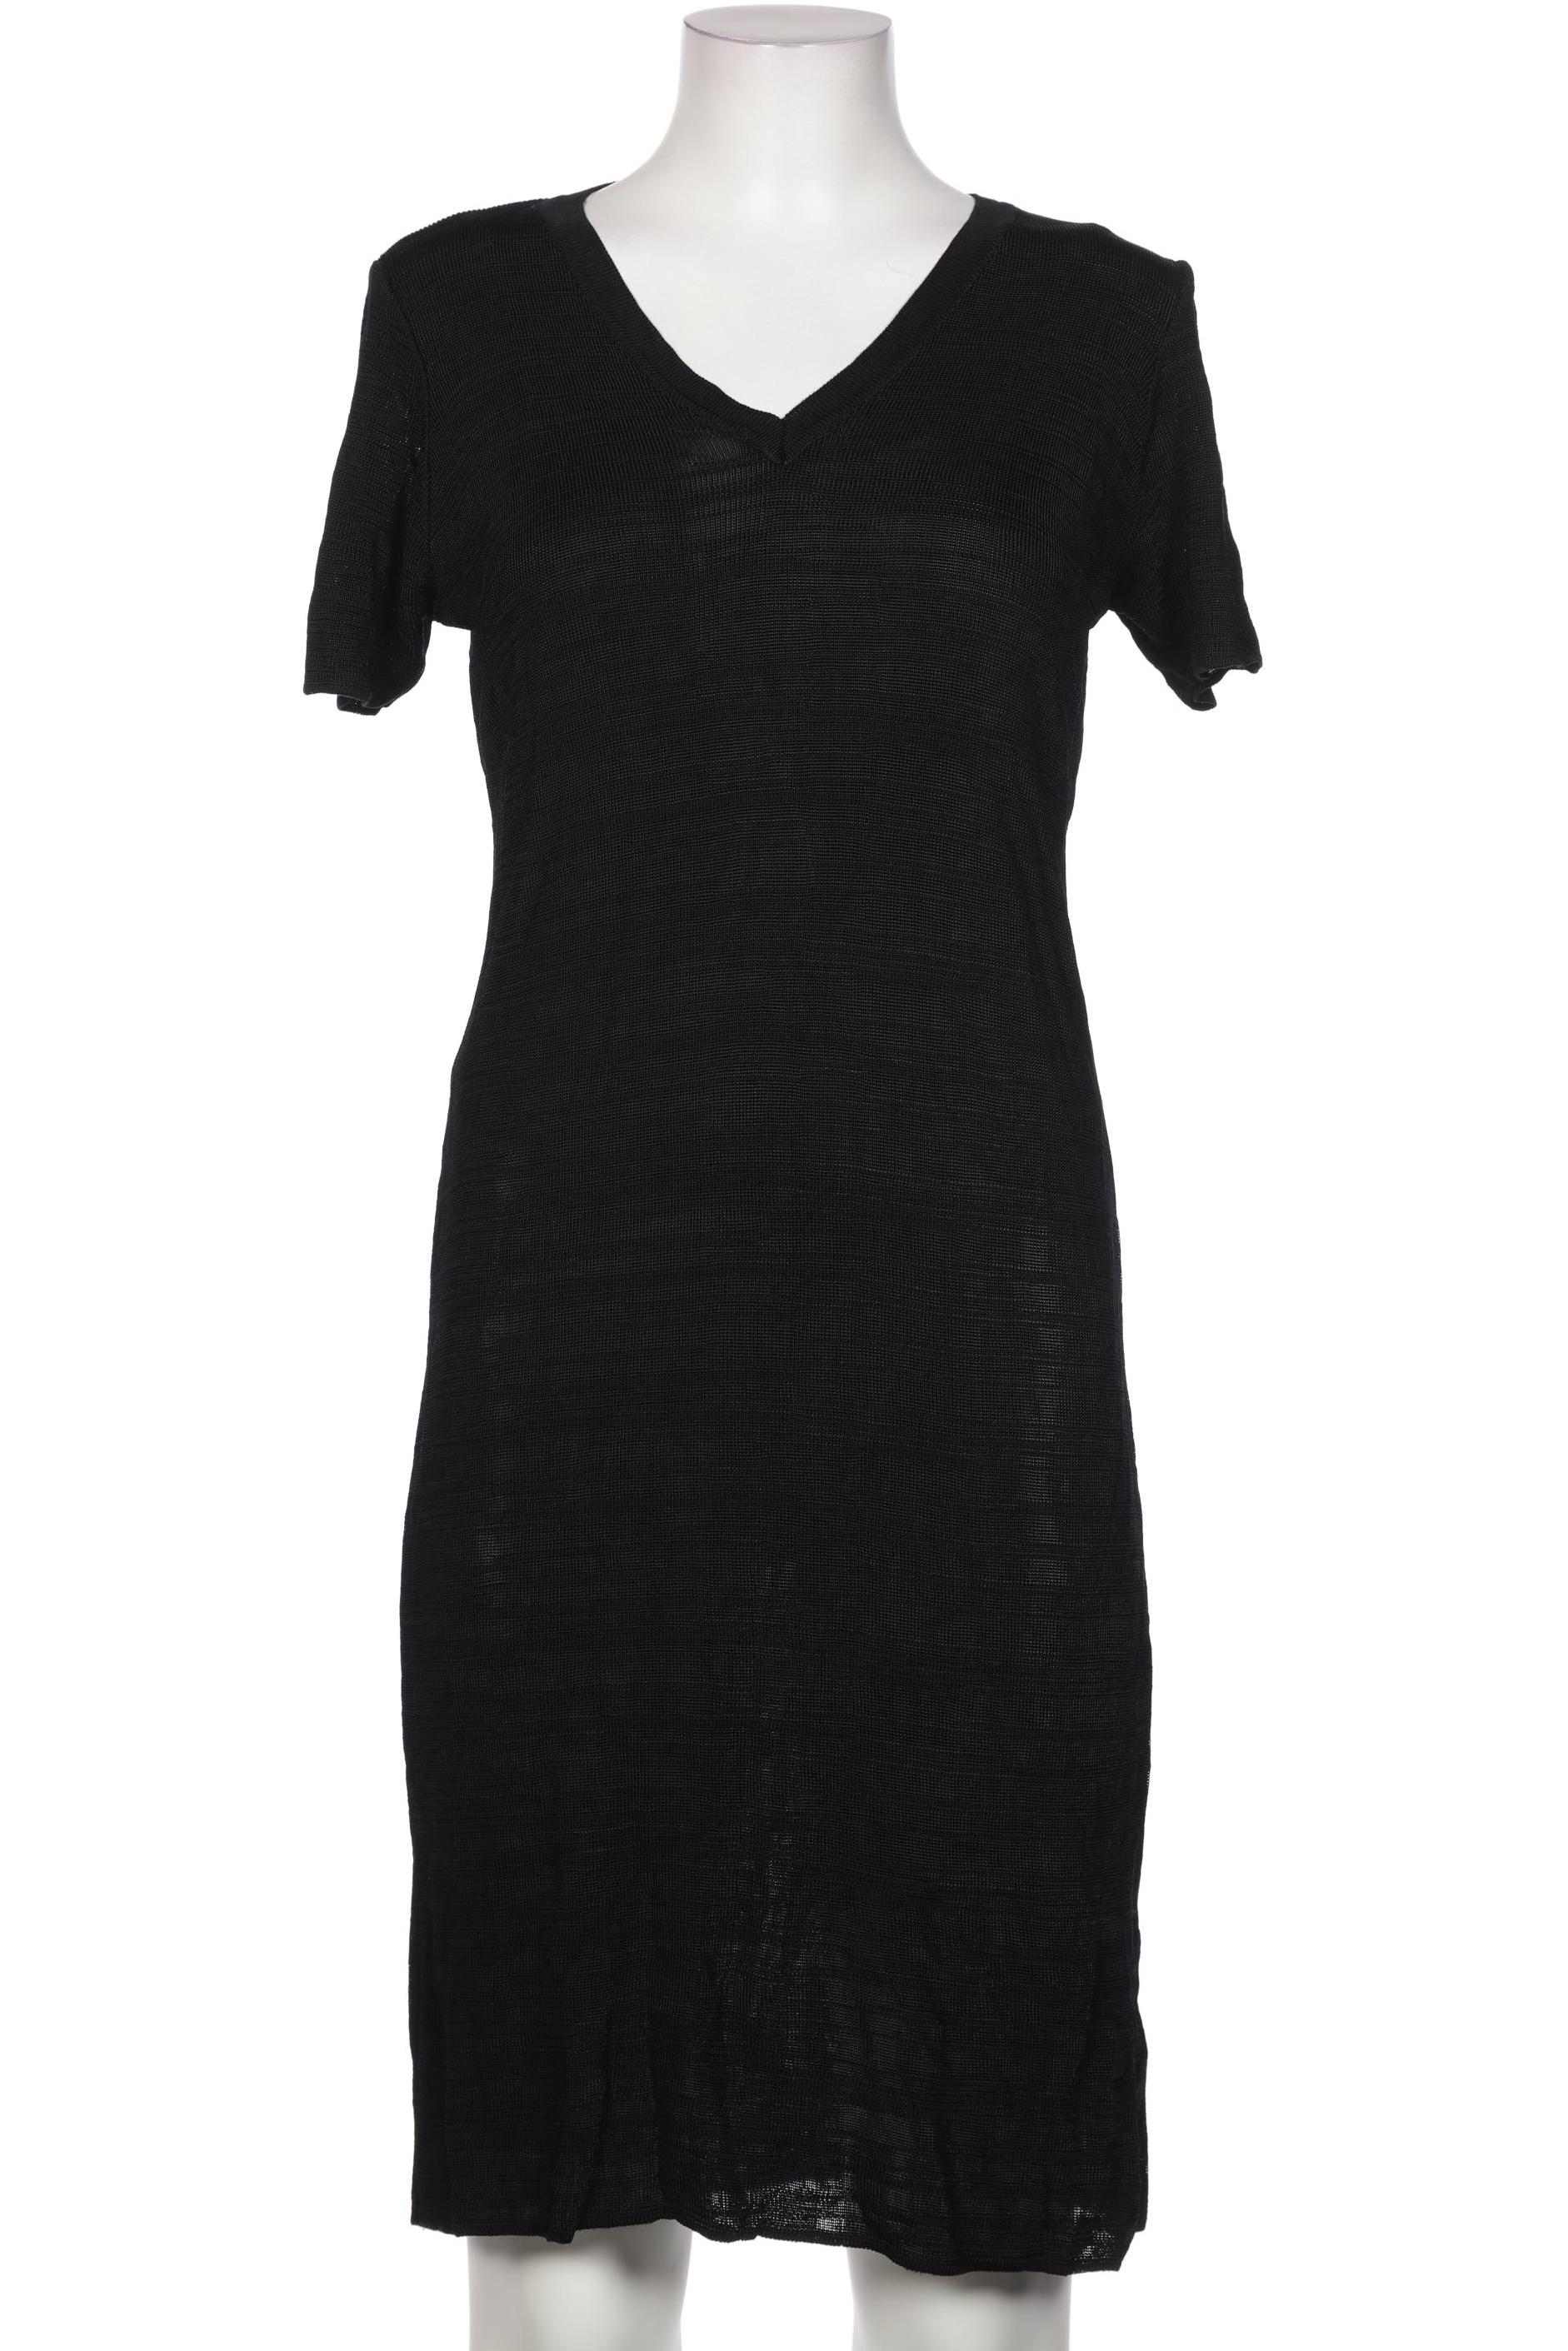 Marks & Spencer Damen Kleid, schwarz von Marks & Spencer